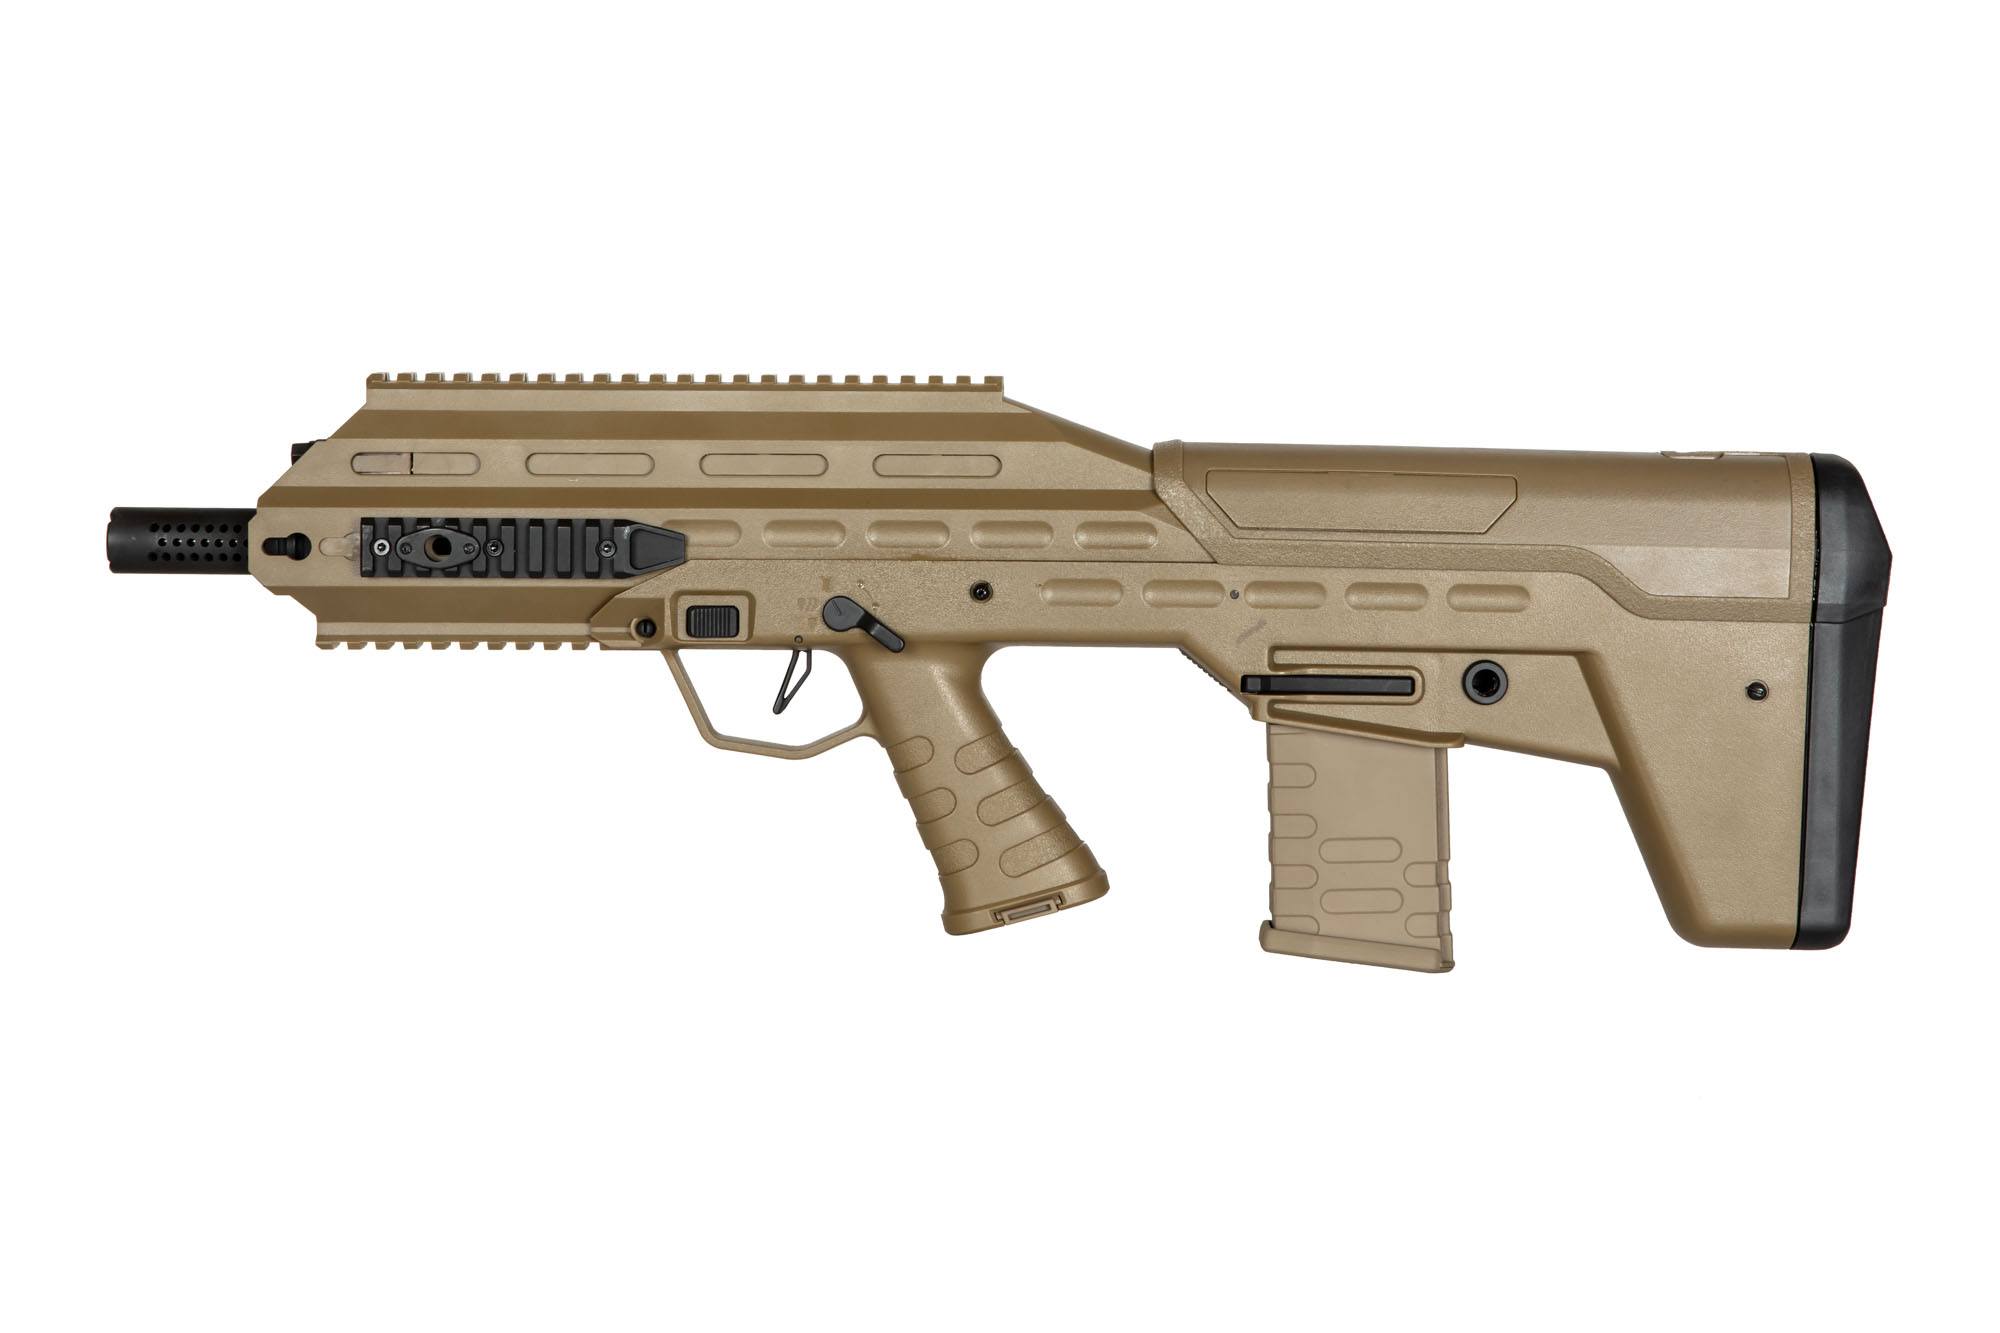 UAR501 Assault Rifle - Tan